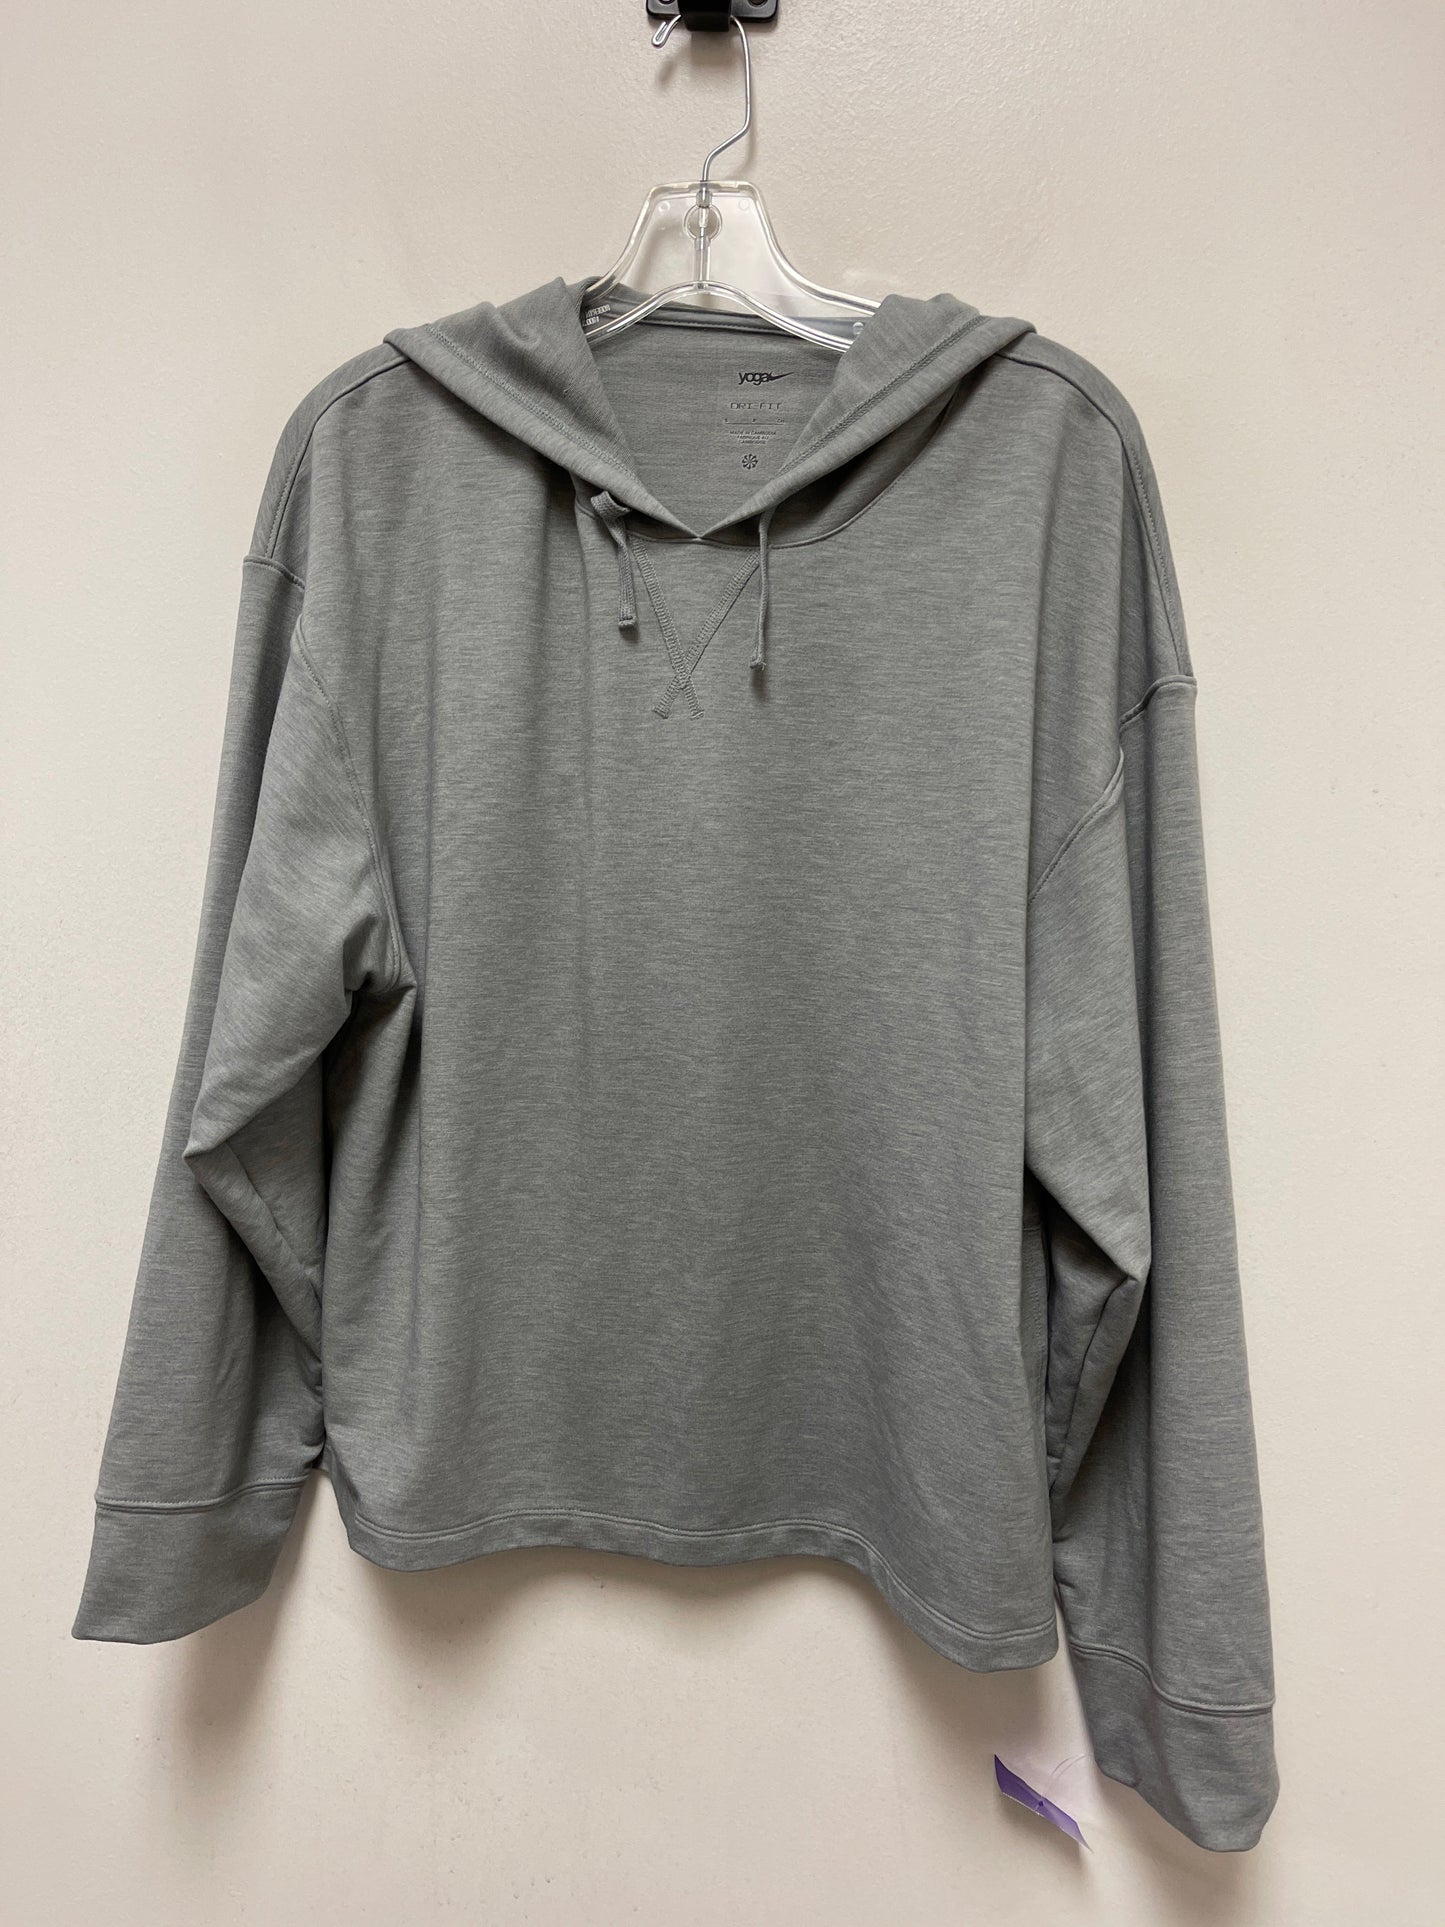 Grey Athletic Sweatshirt Hoodie Nike Apparel, Size S